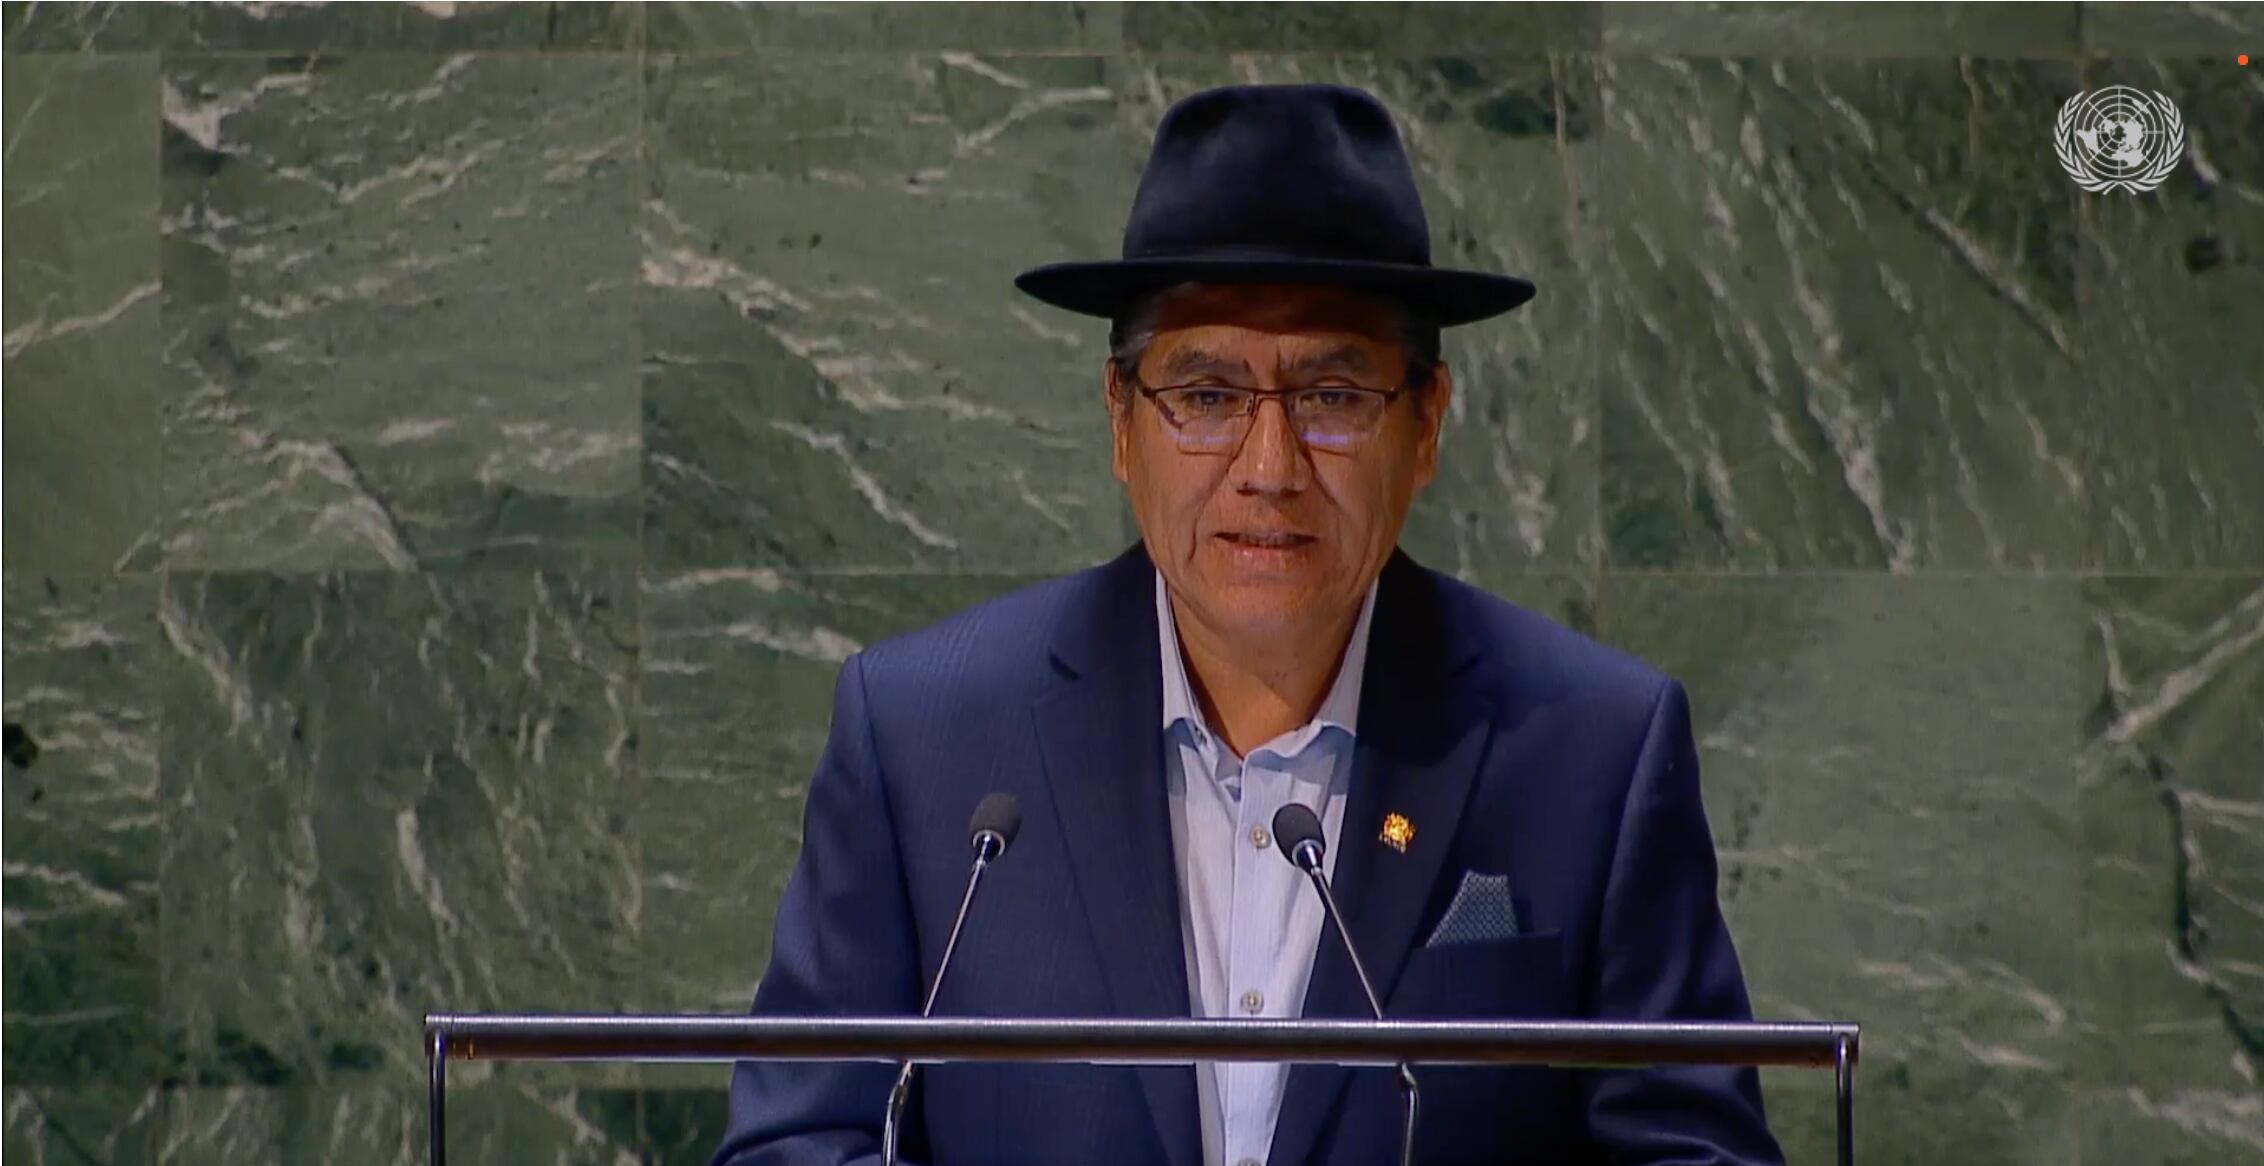 El embajador de Bolivia acusó a Israel de faltar el respeto a la comunidad internacional en la Asamblea General de las Naciones Unidas.